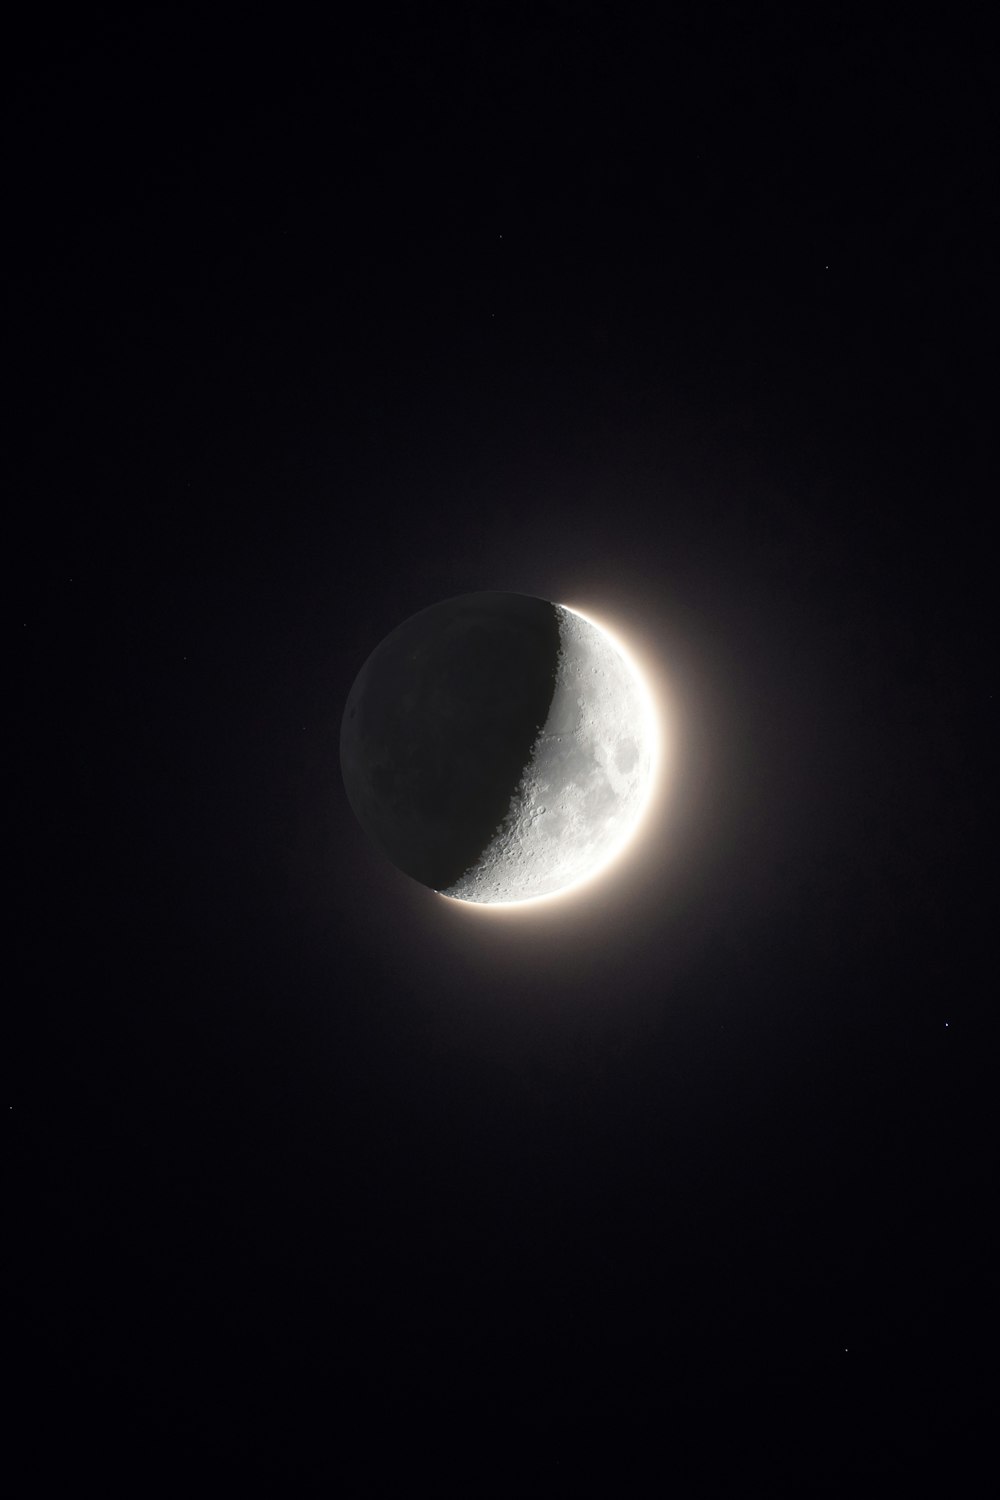 검은색 배경 앞에 달이 보입니다.